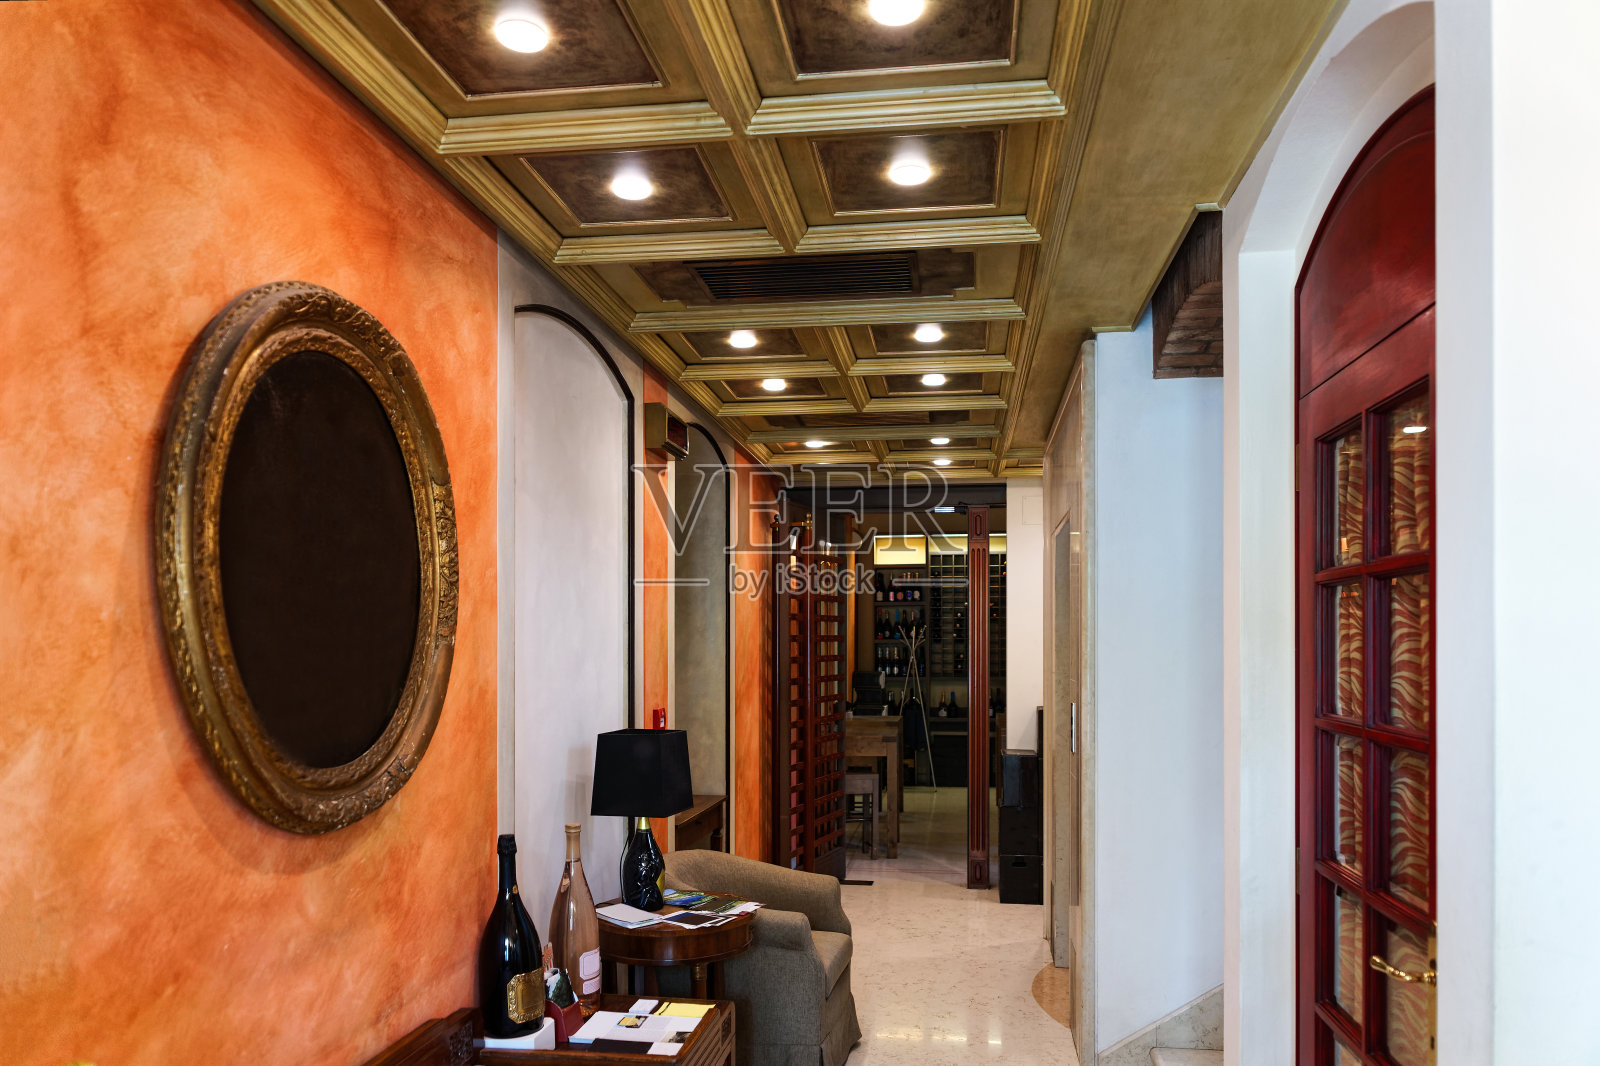 背景是复古葡萄酒餐厅的走廊内部照片摄影图片